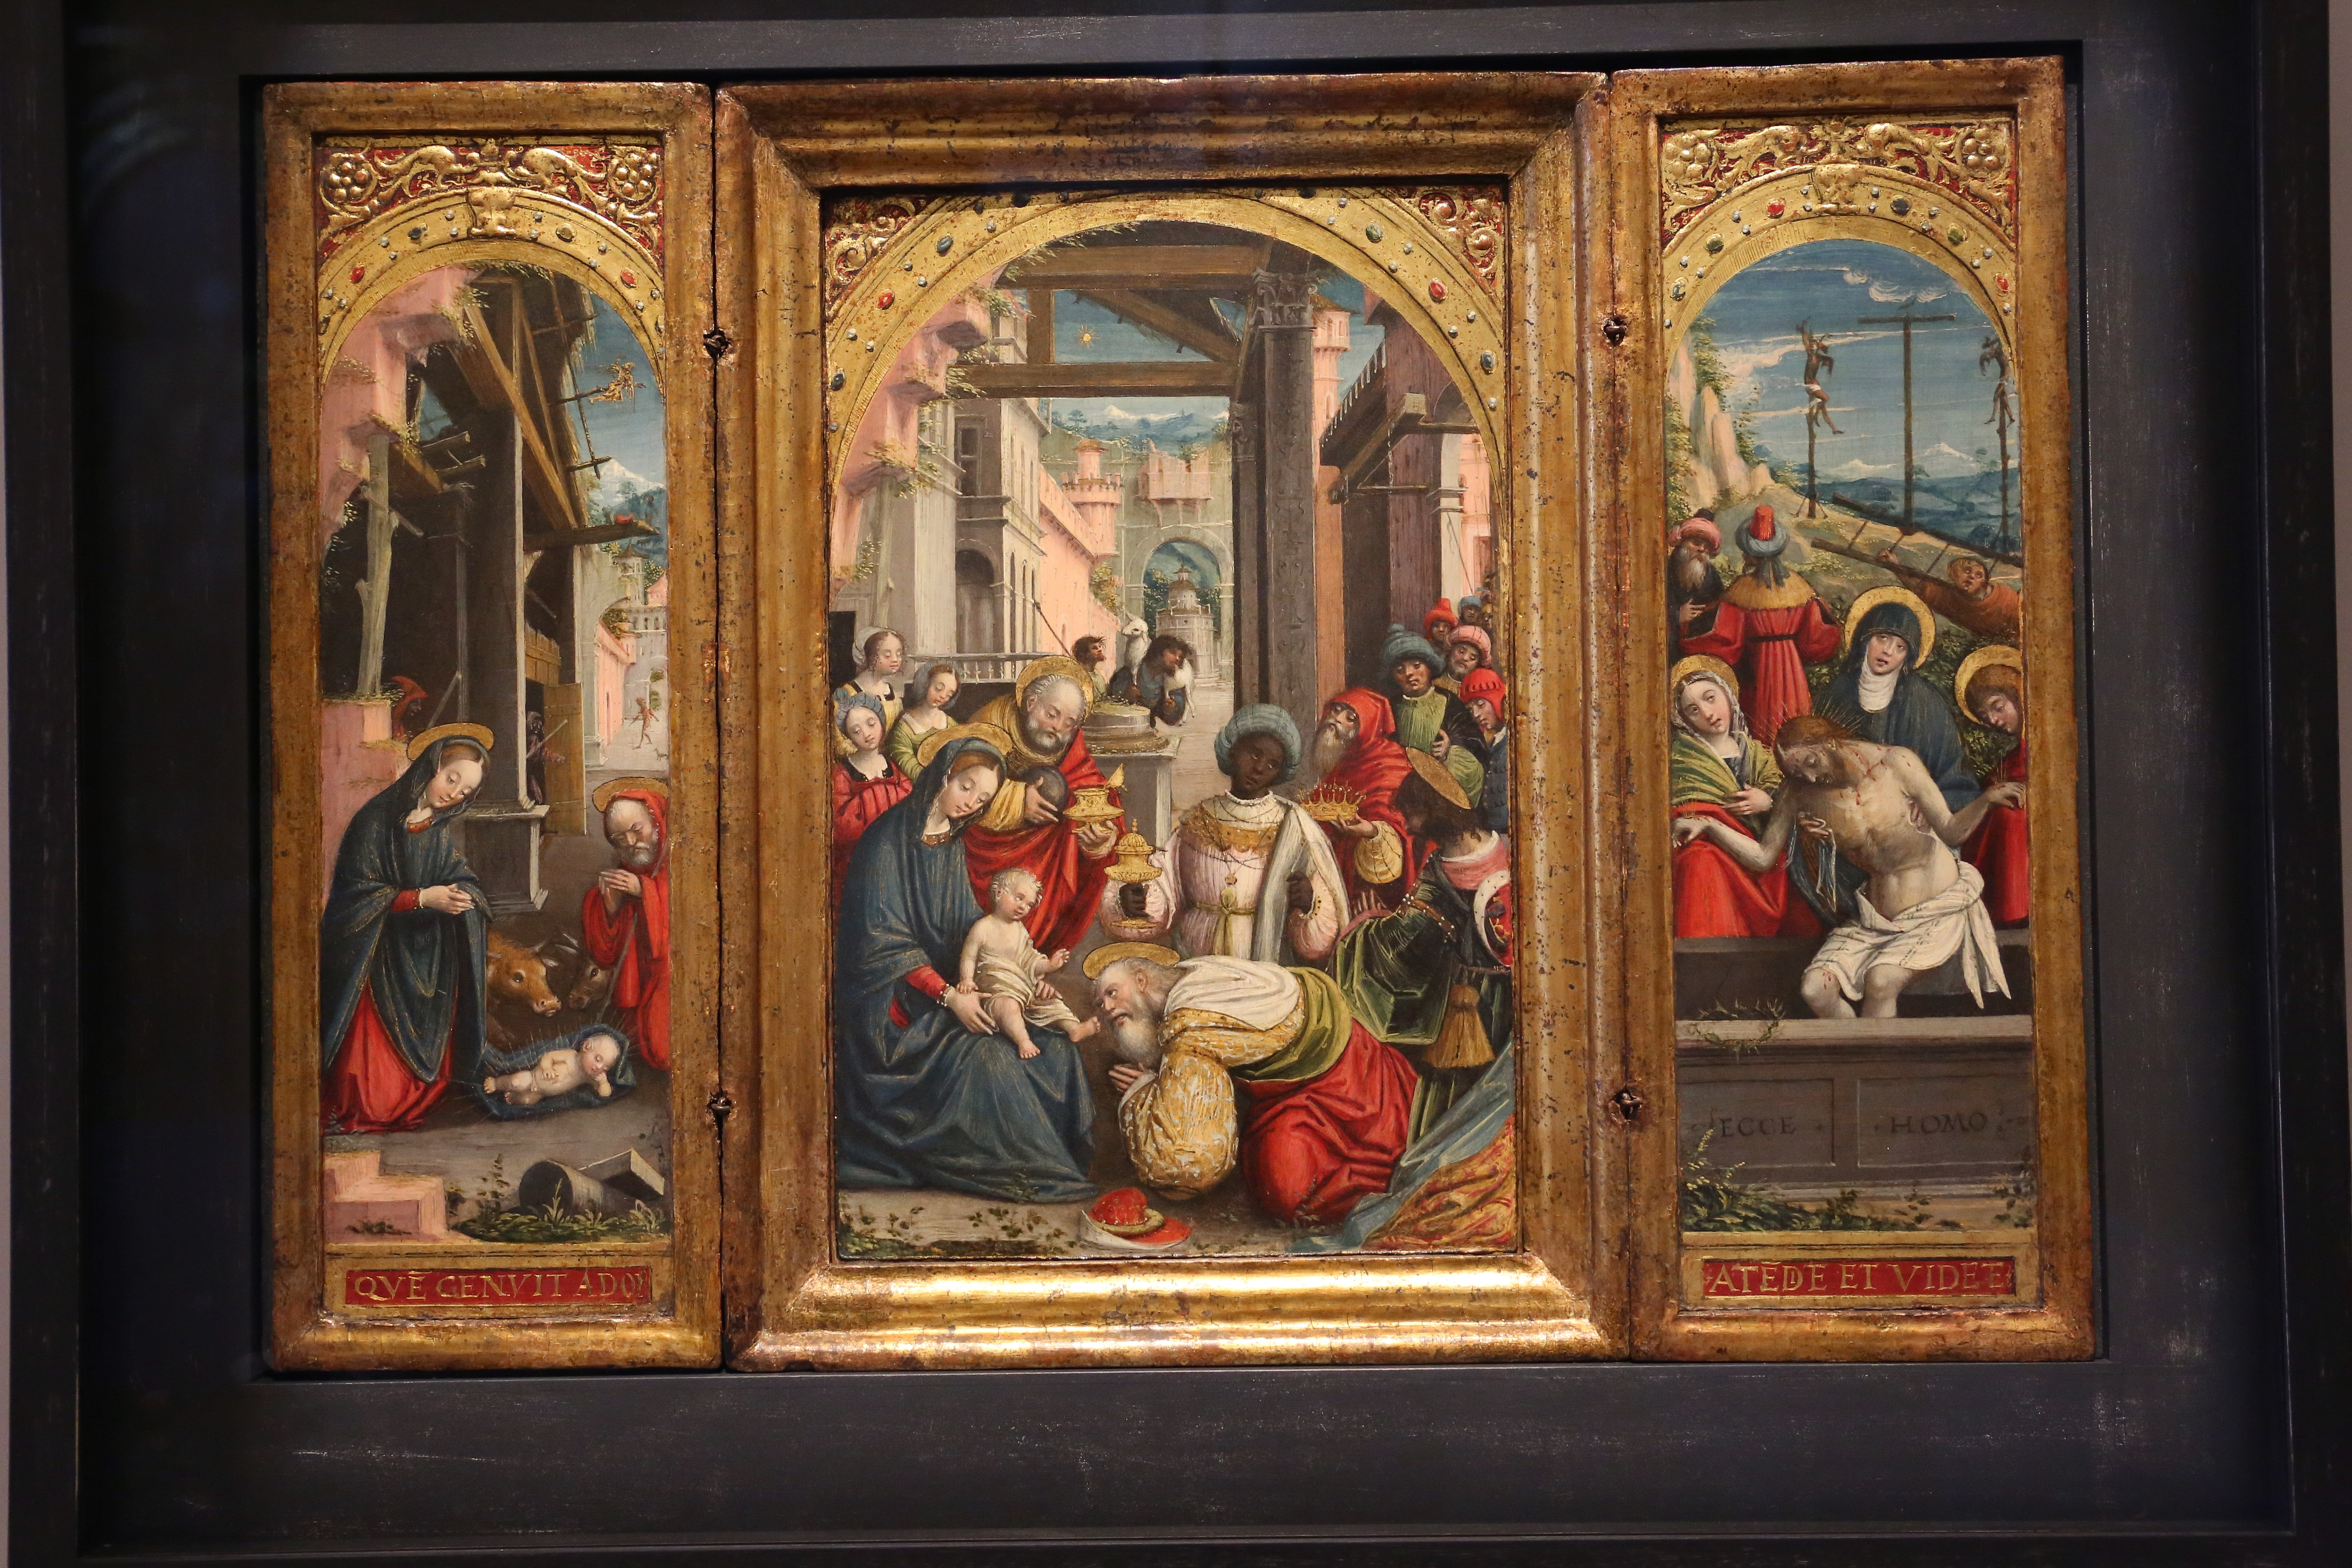 GalleriaSabauda_104.JPG - Defendente Ferrari  Chivasso, Torino, 1480 / 1485 - dopo il 1540  Natività; Adorazione dei Magi; Deposizione di Cristo nel sepolcro